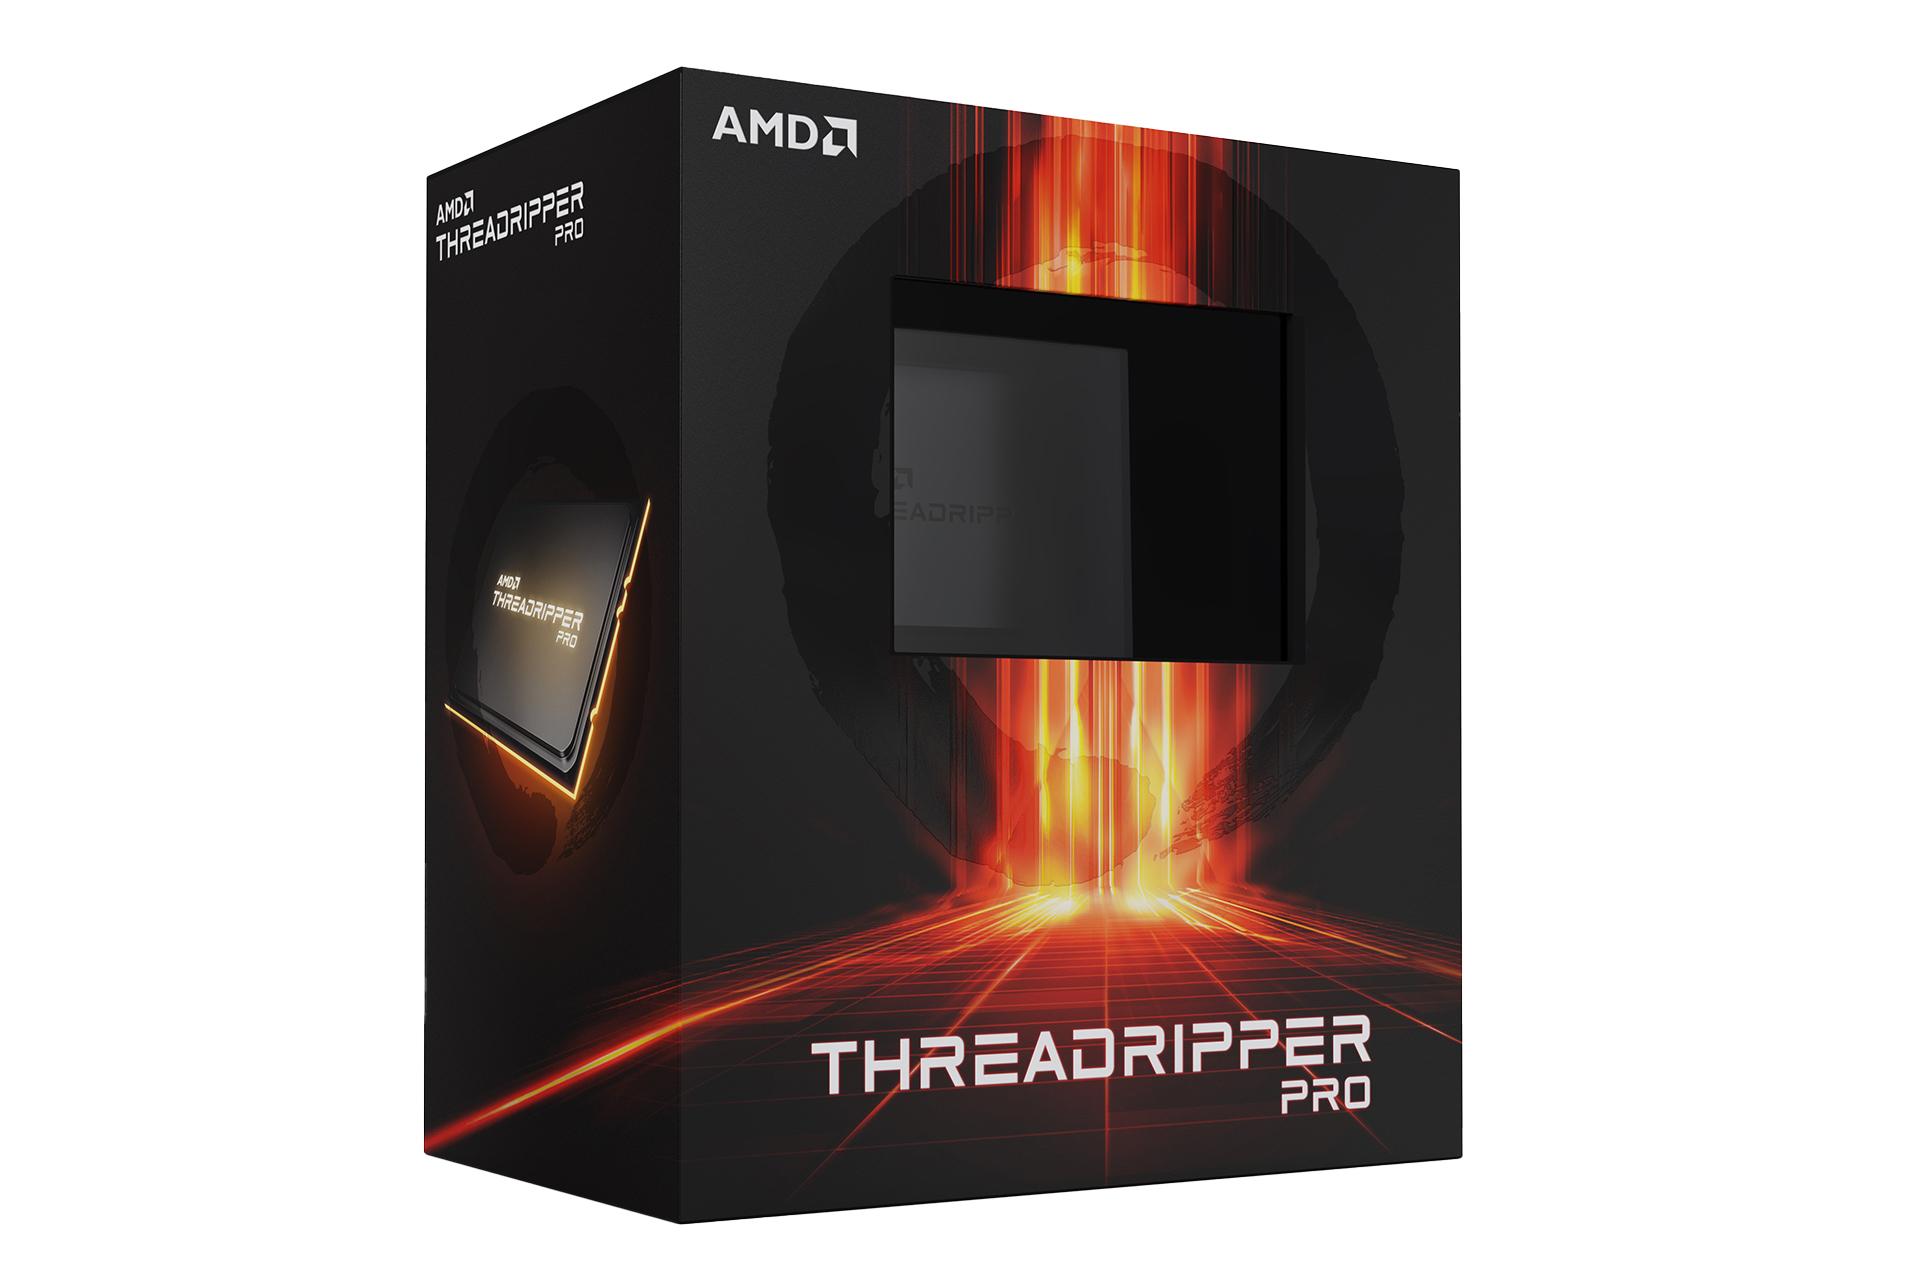 نمای سمت چپ جعبه پردازنده AMD رایزن تردریپر پرو / AMD Ryzen Threadripper PRO